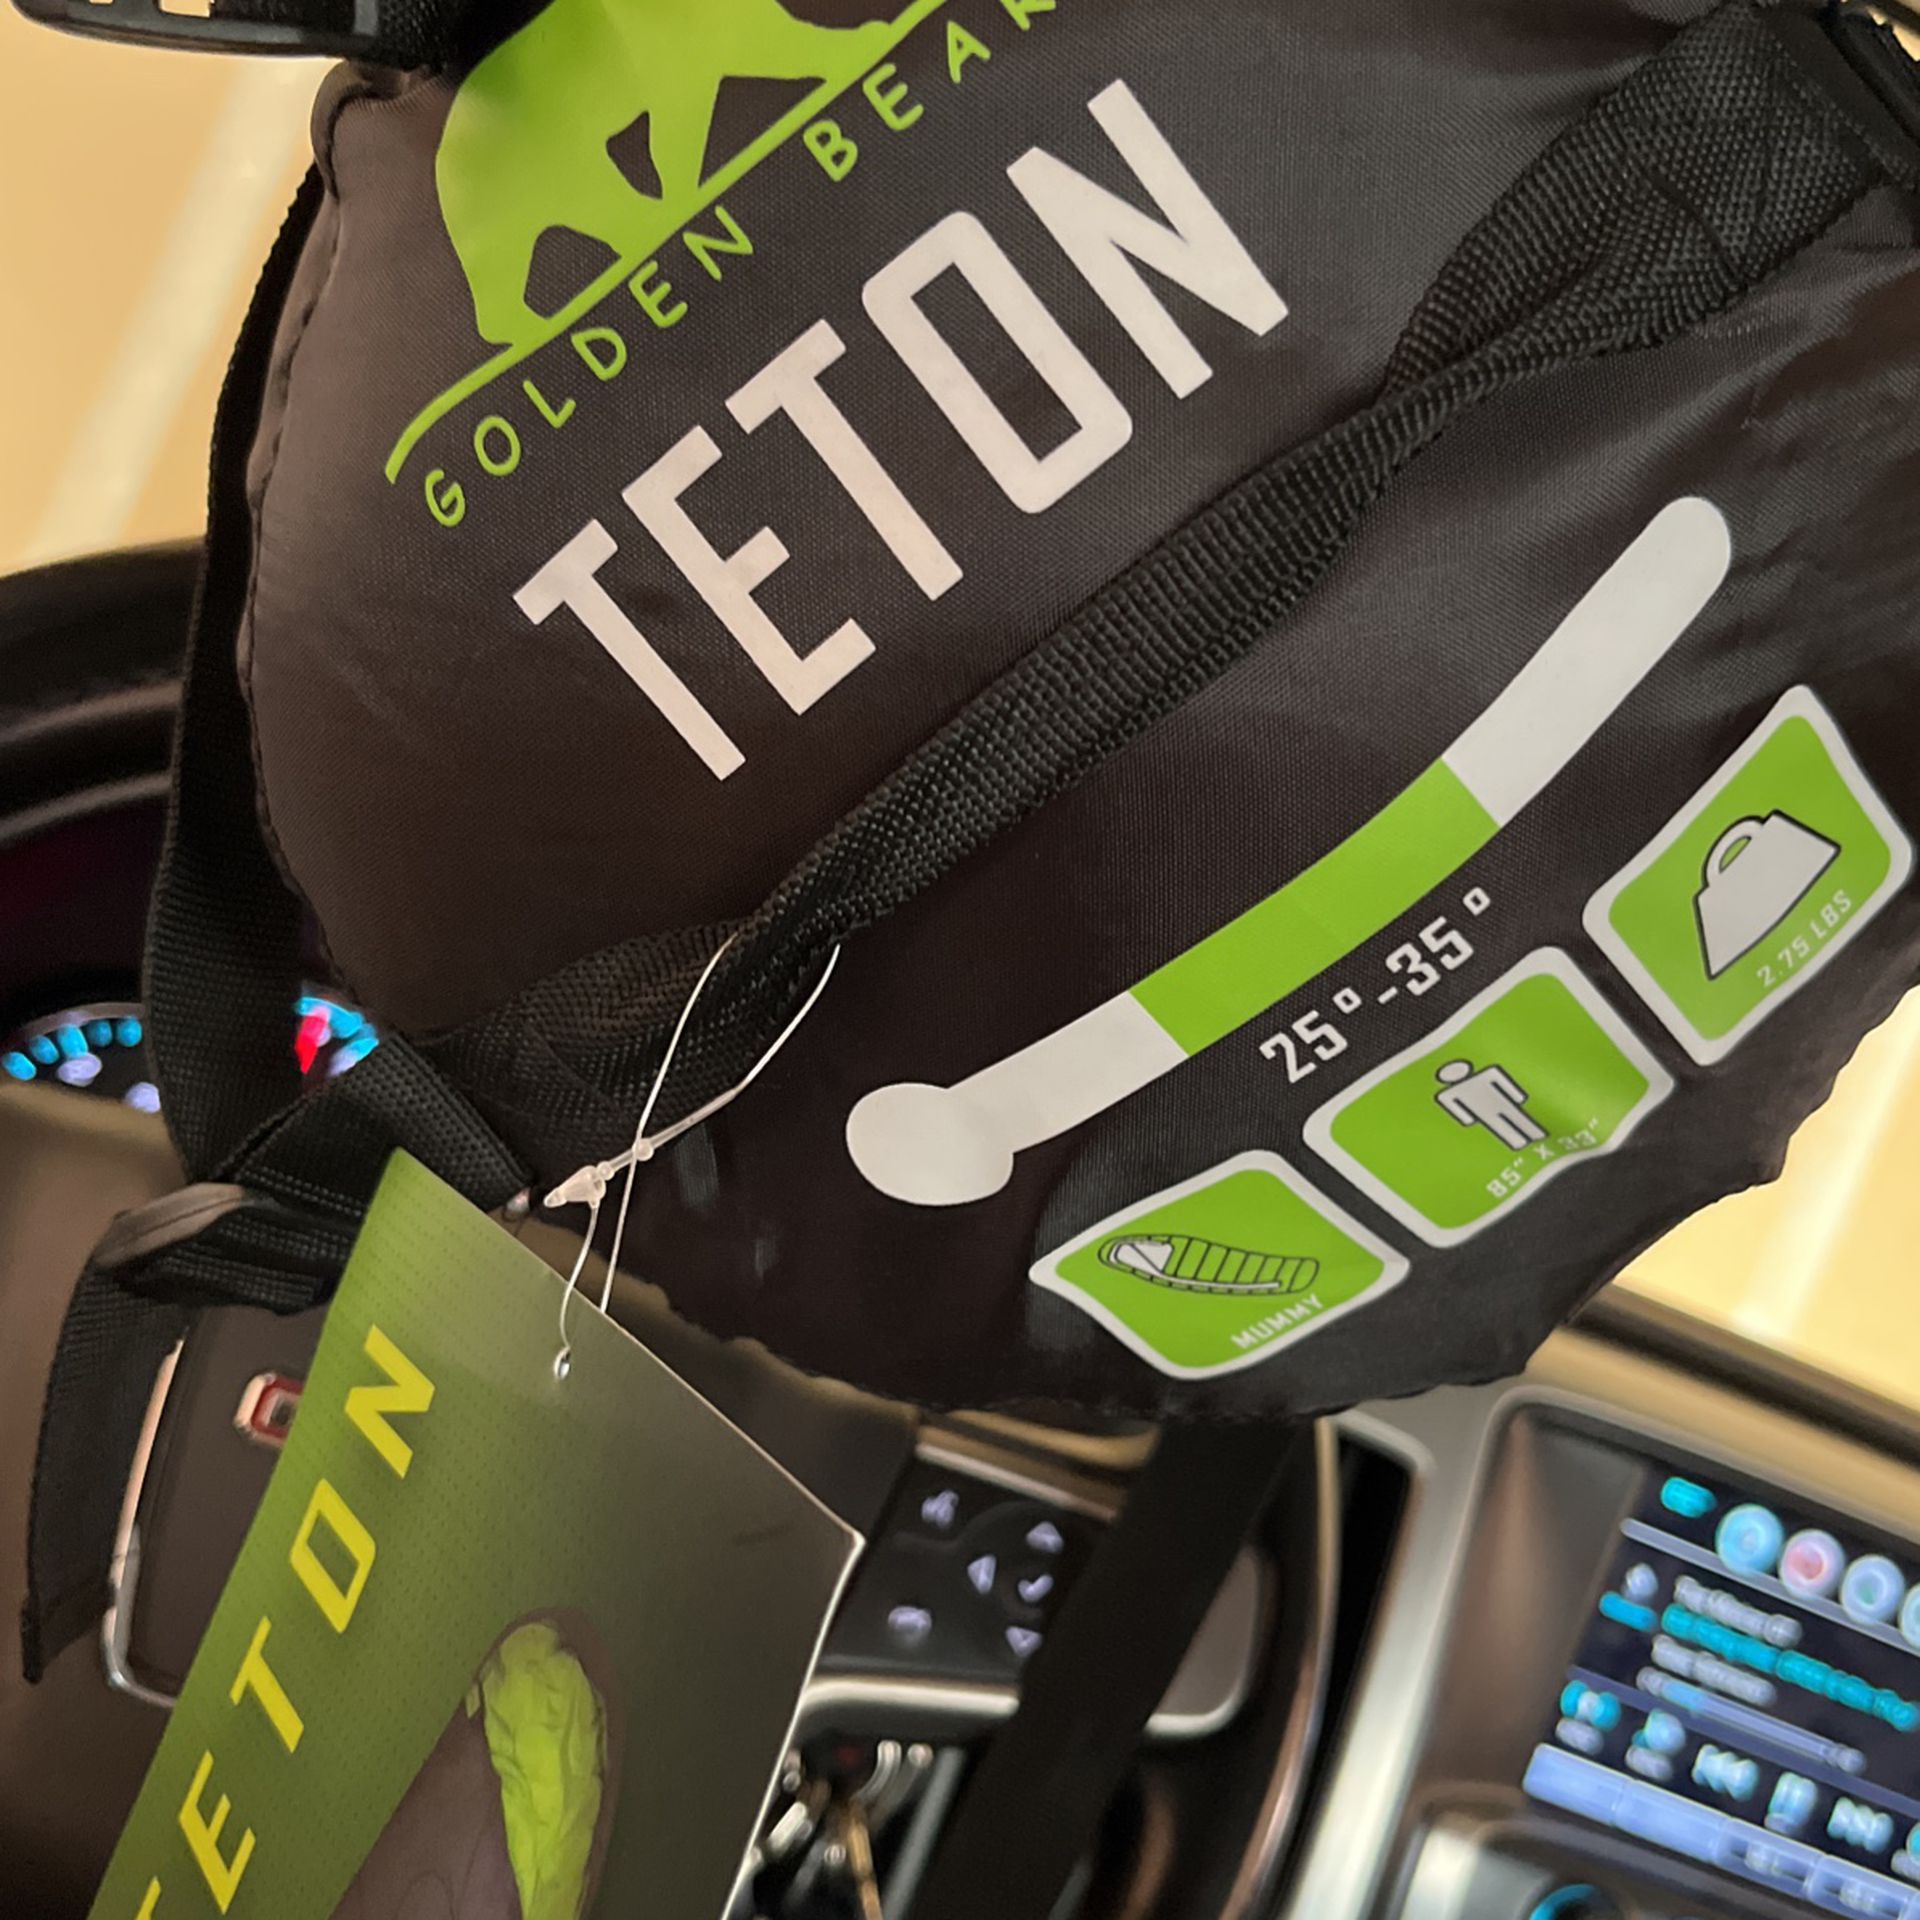 Teton Sleeping Bag